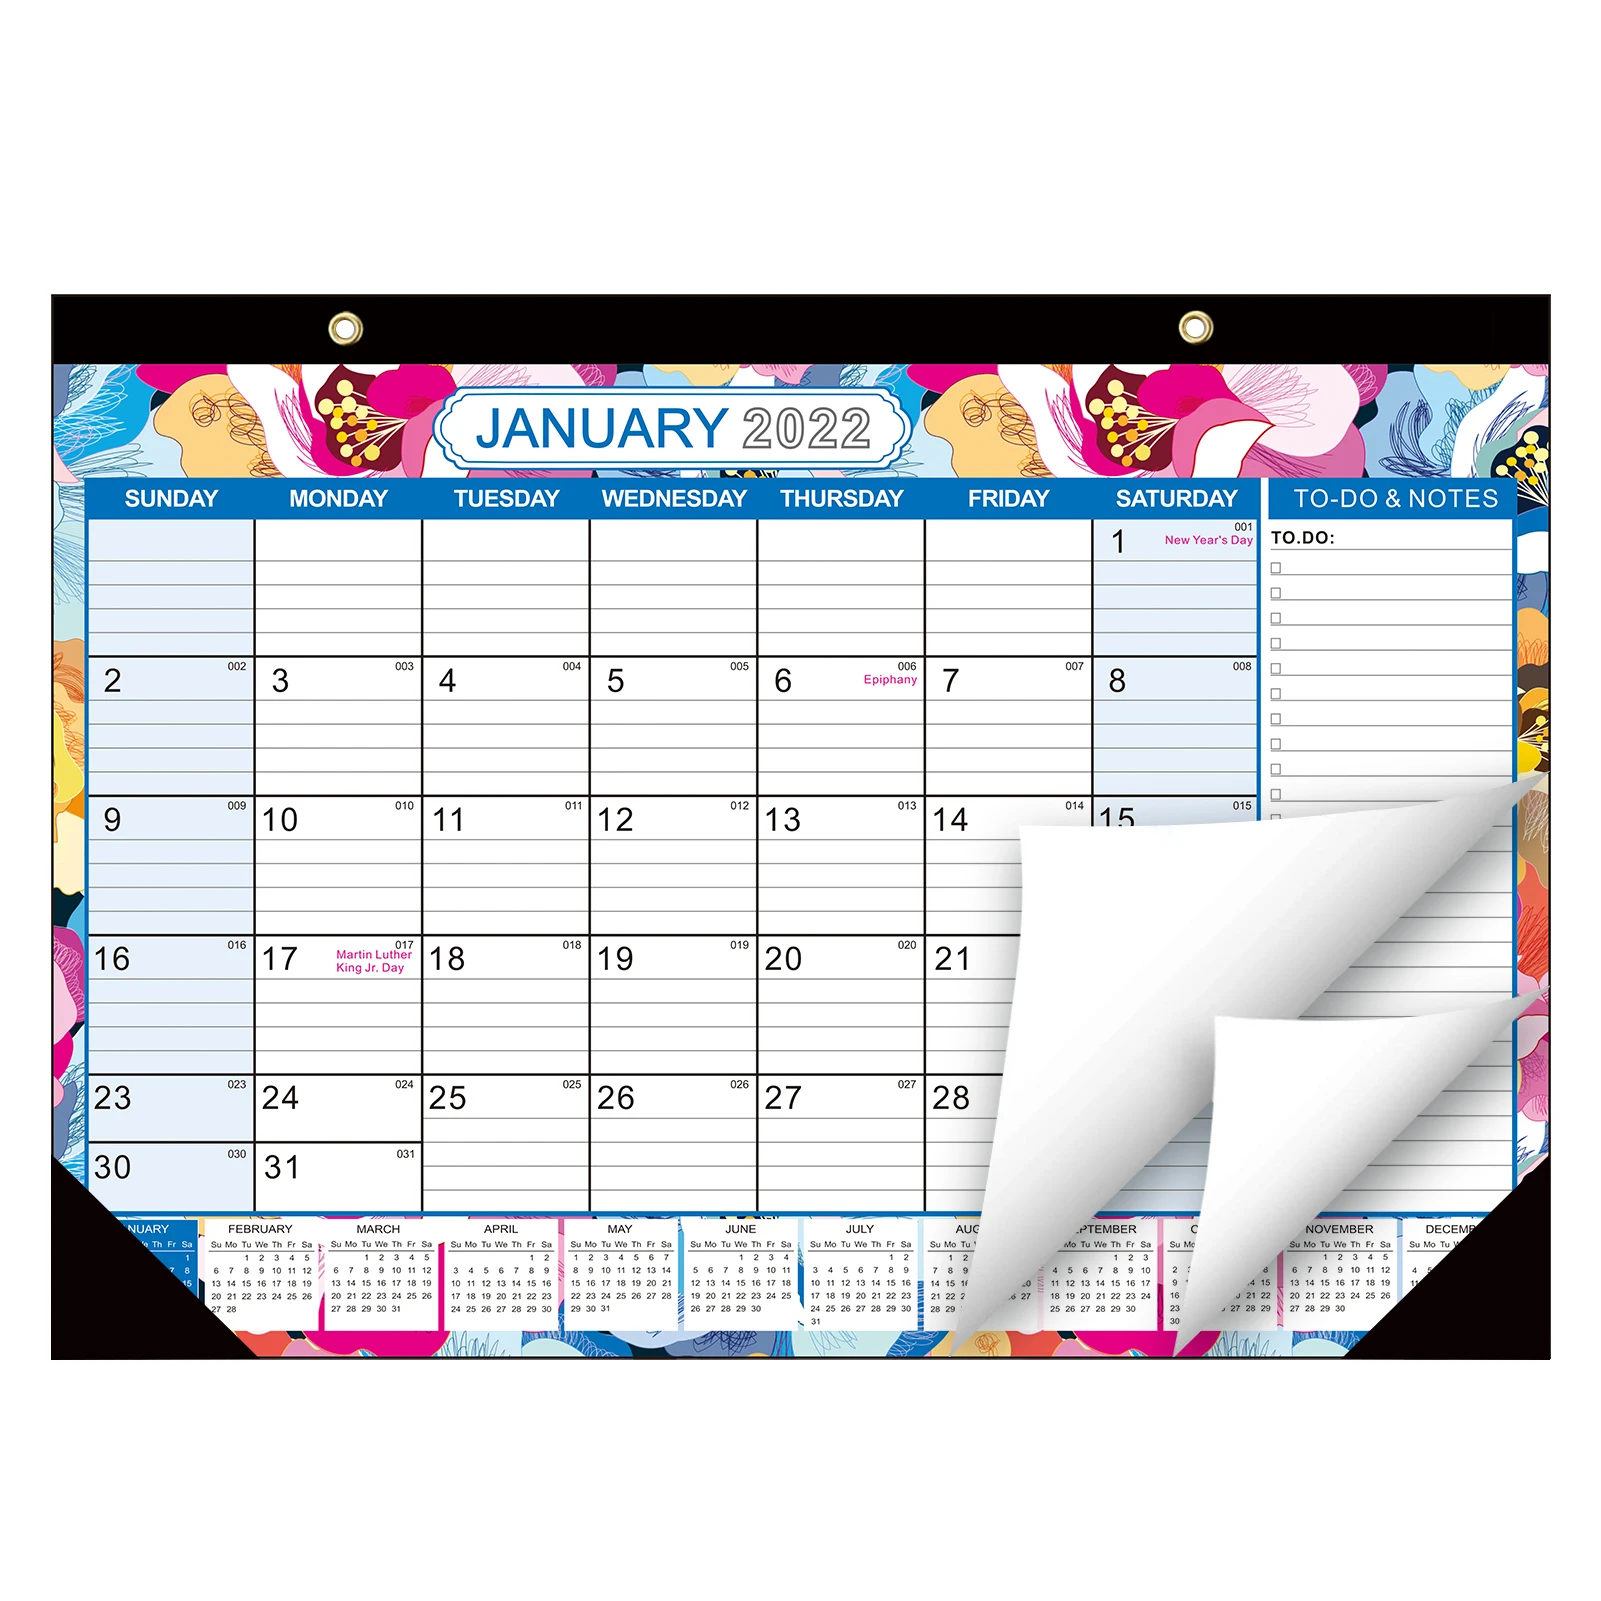 LTCTL Calendario de Escritorio 2022 Calendario De Escritorio Grande 2022 Stand Flip 2022 Calendar 10x8.4in Calendario De Escritorio con Etiqueta De Notas De Color 2022 Calendario Escritorio 